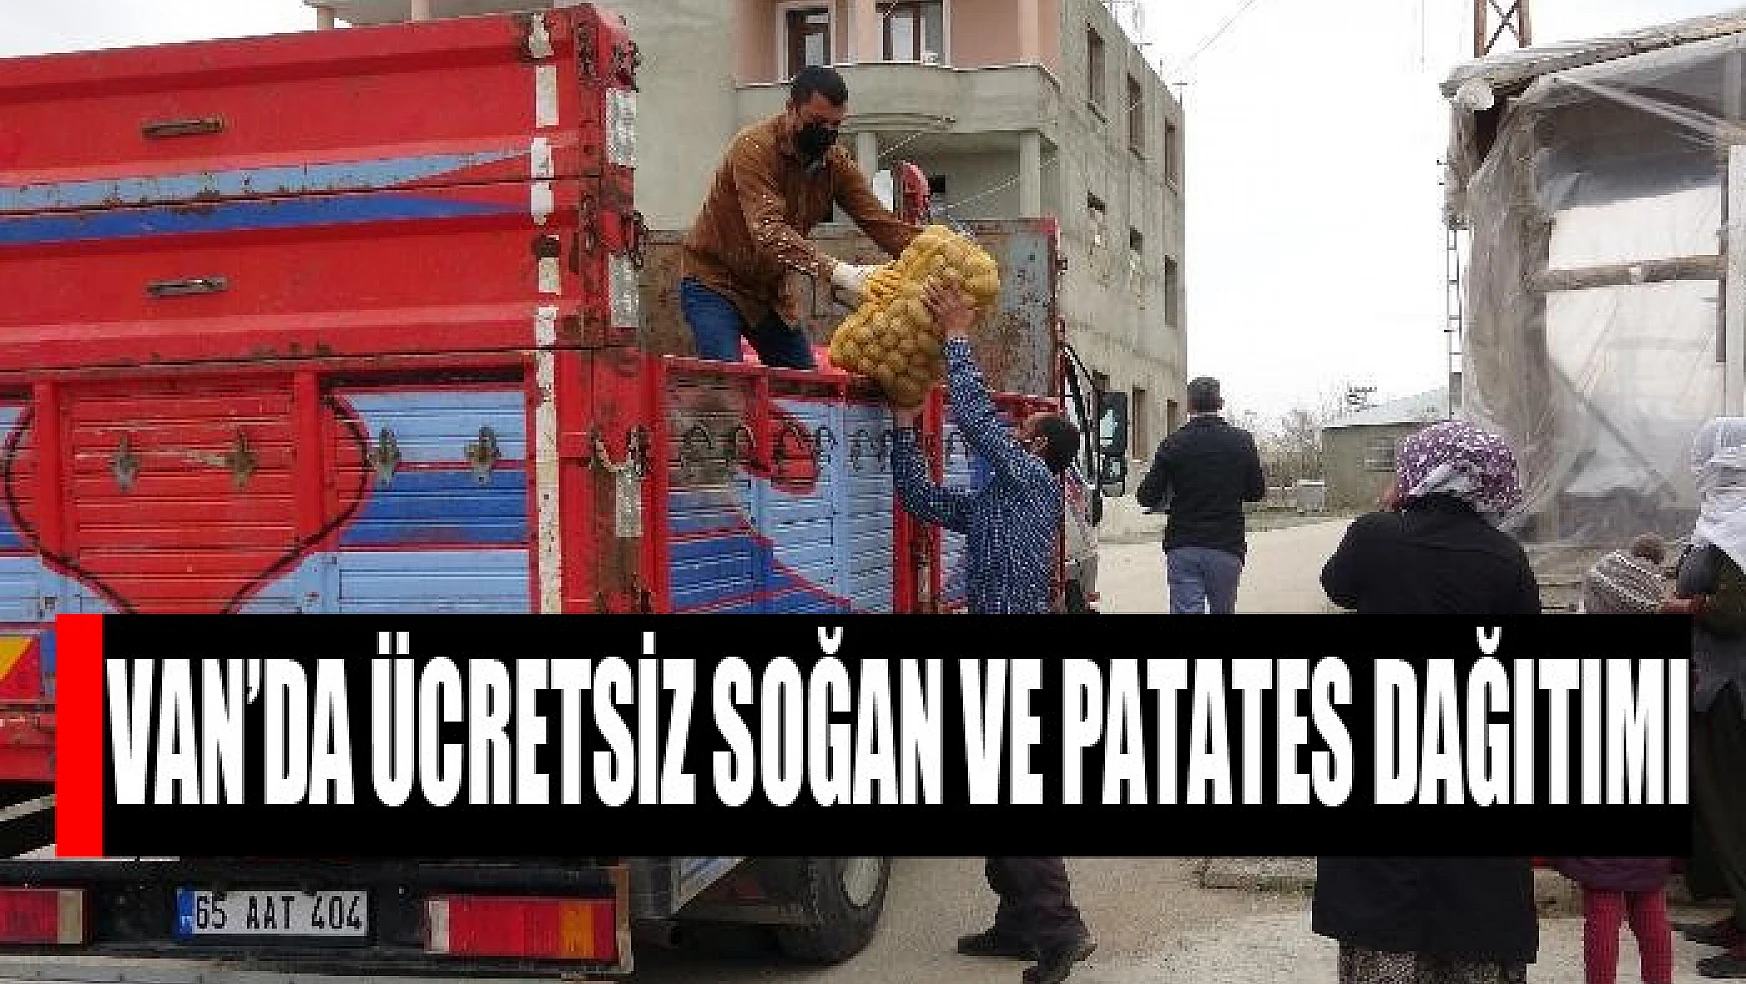 Van'da ücretsiz soğan ve patates dağıtımı